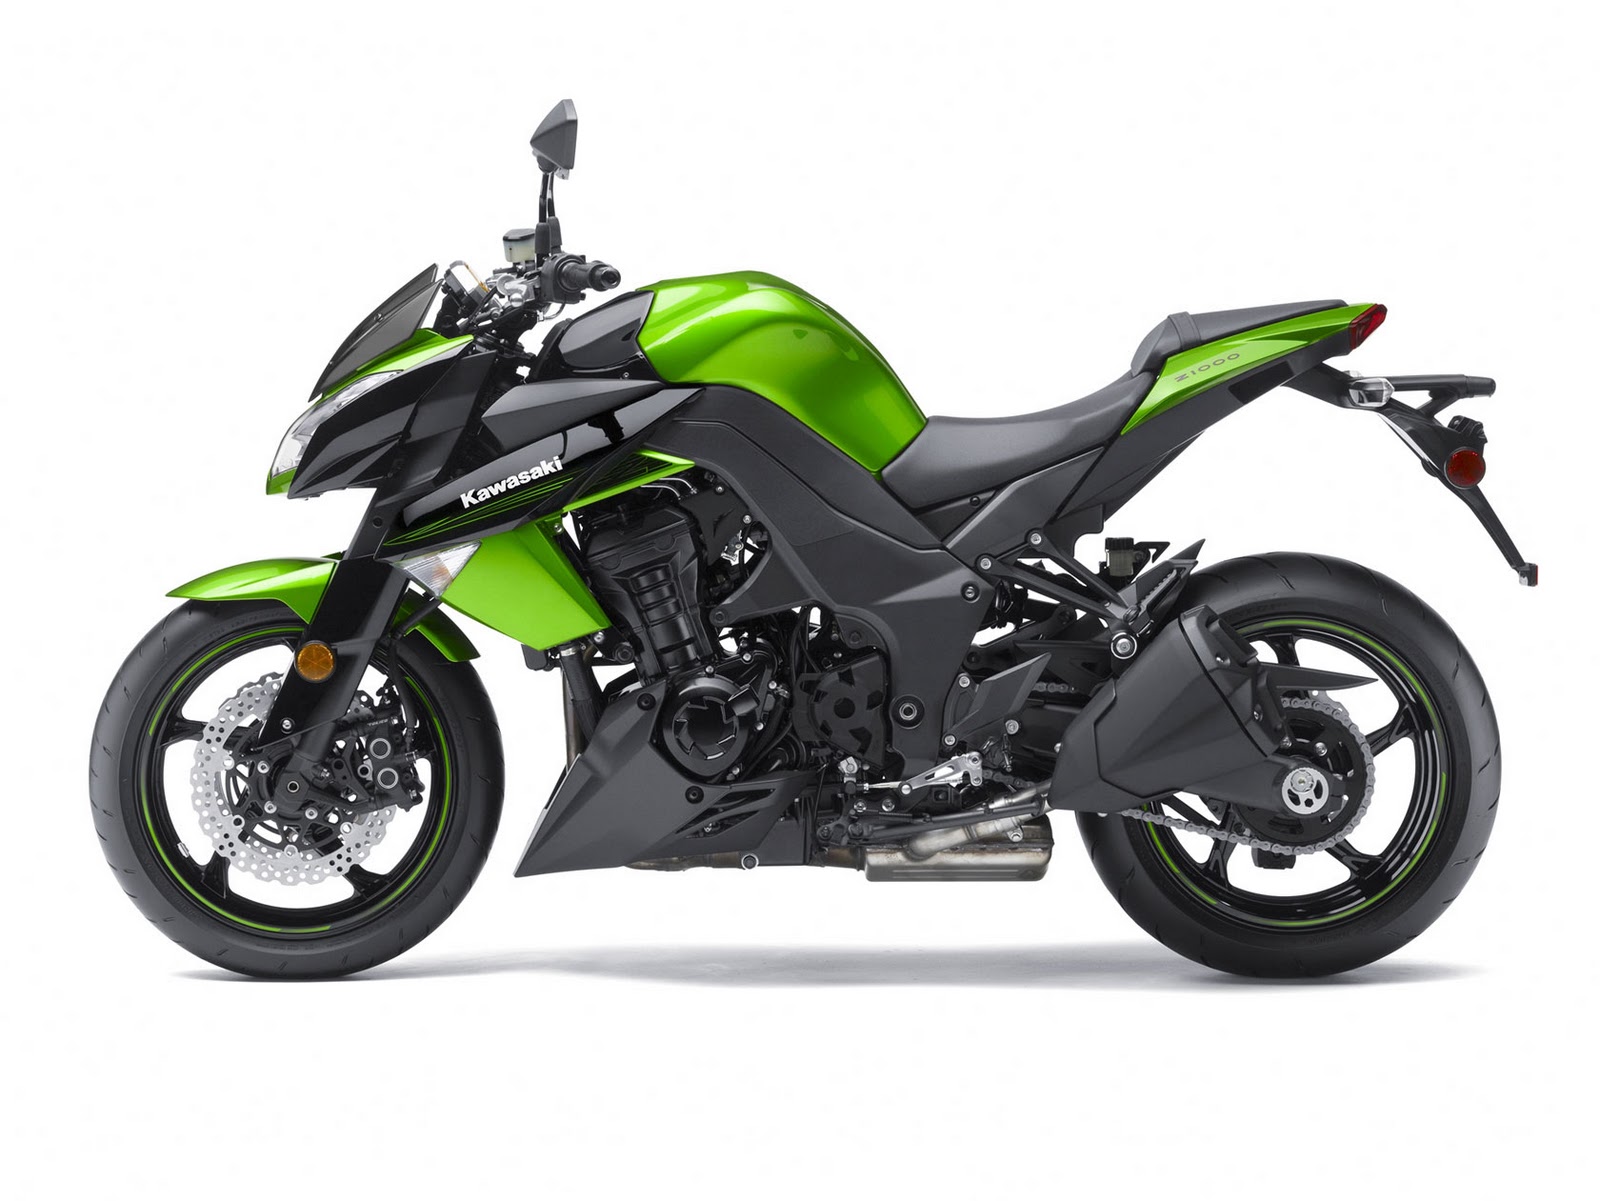 Kawasaki Motorcycle Pictures: Kawasaki Z1000 - 2011